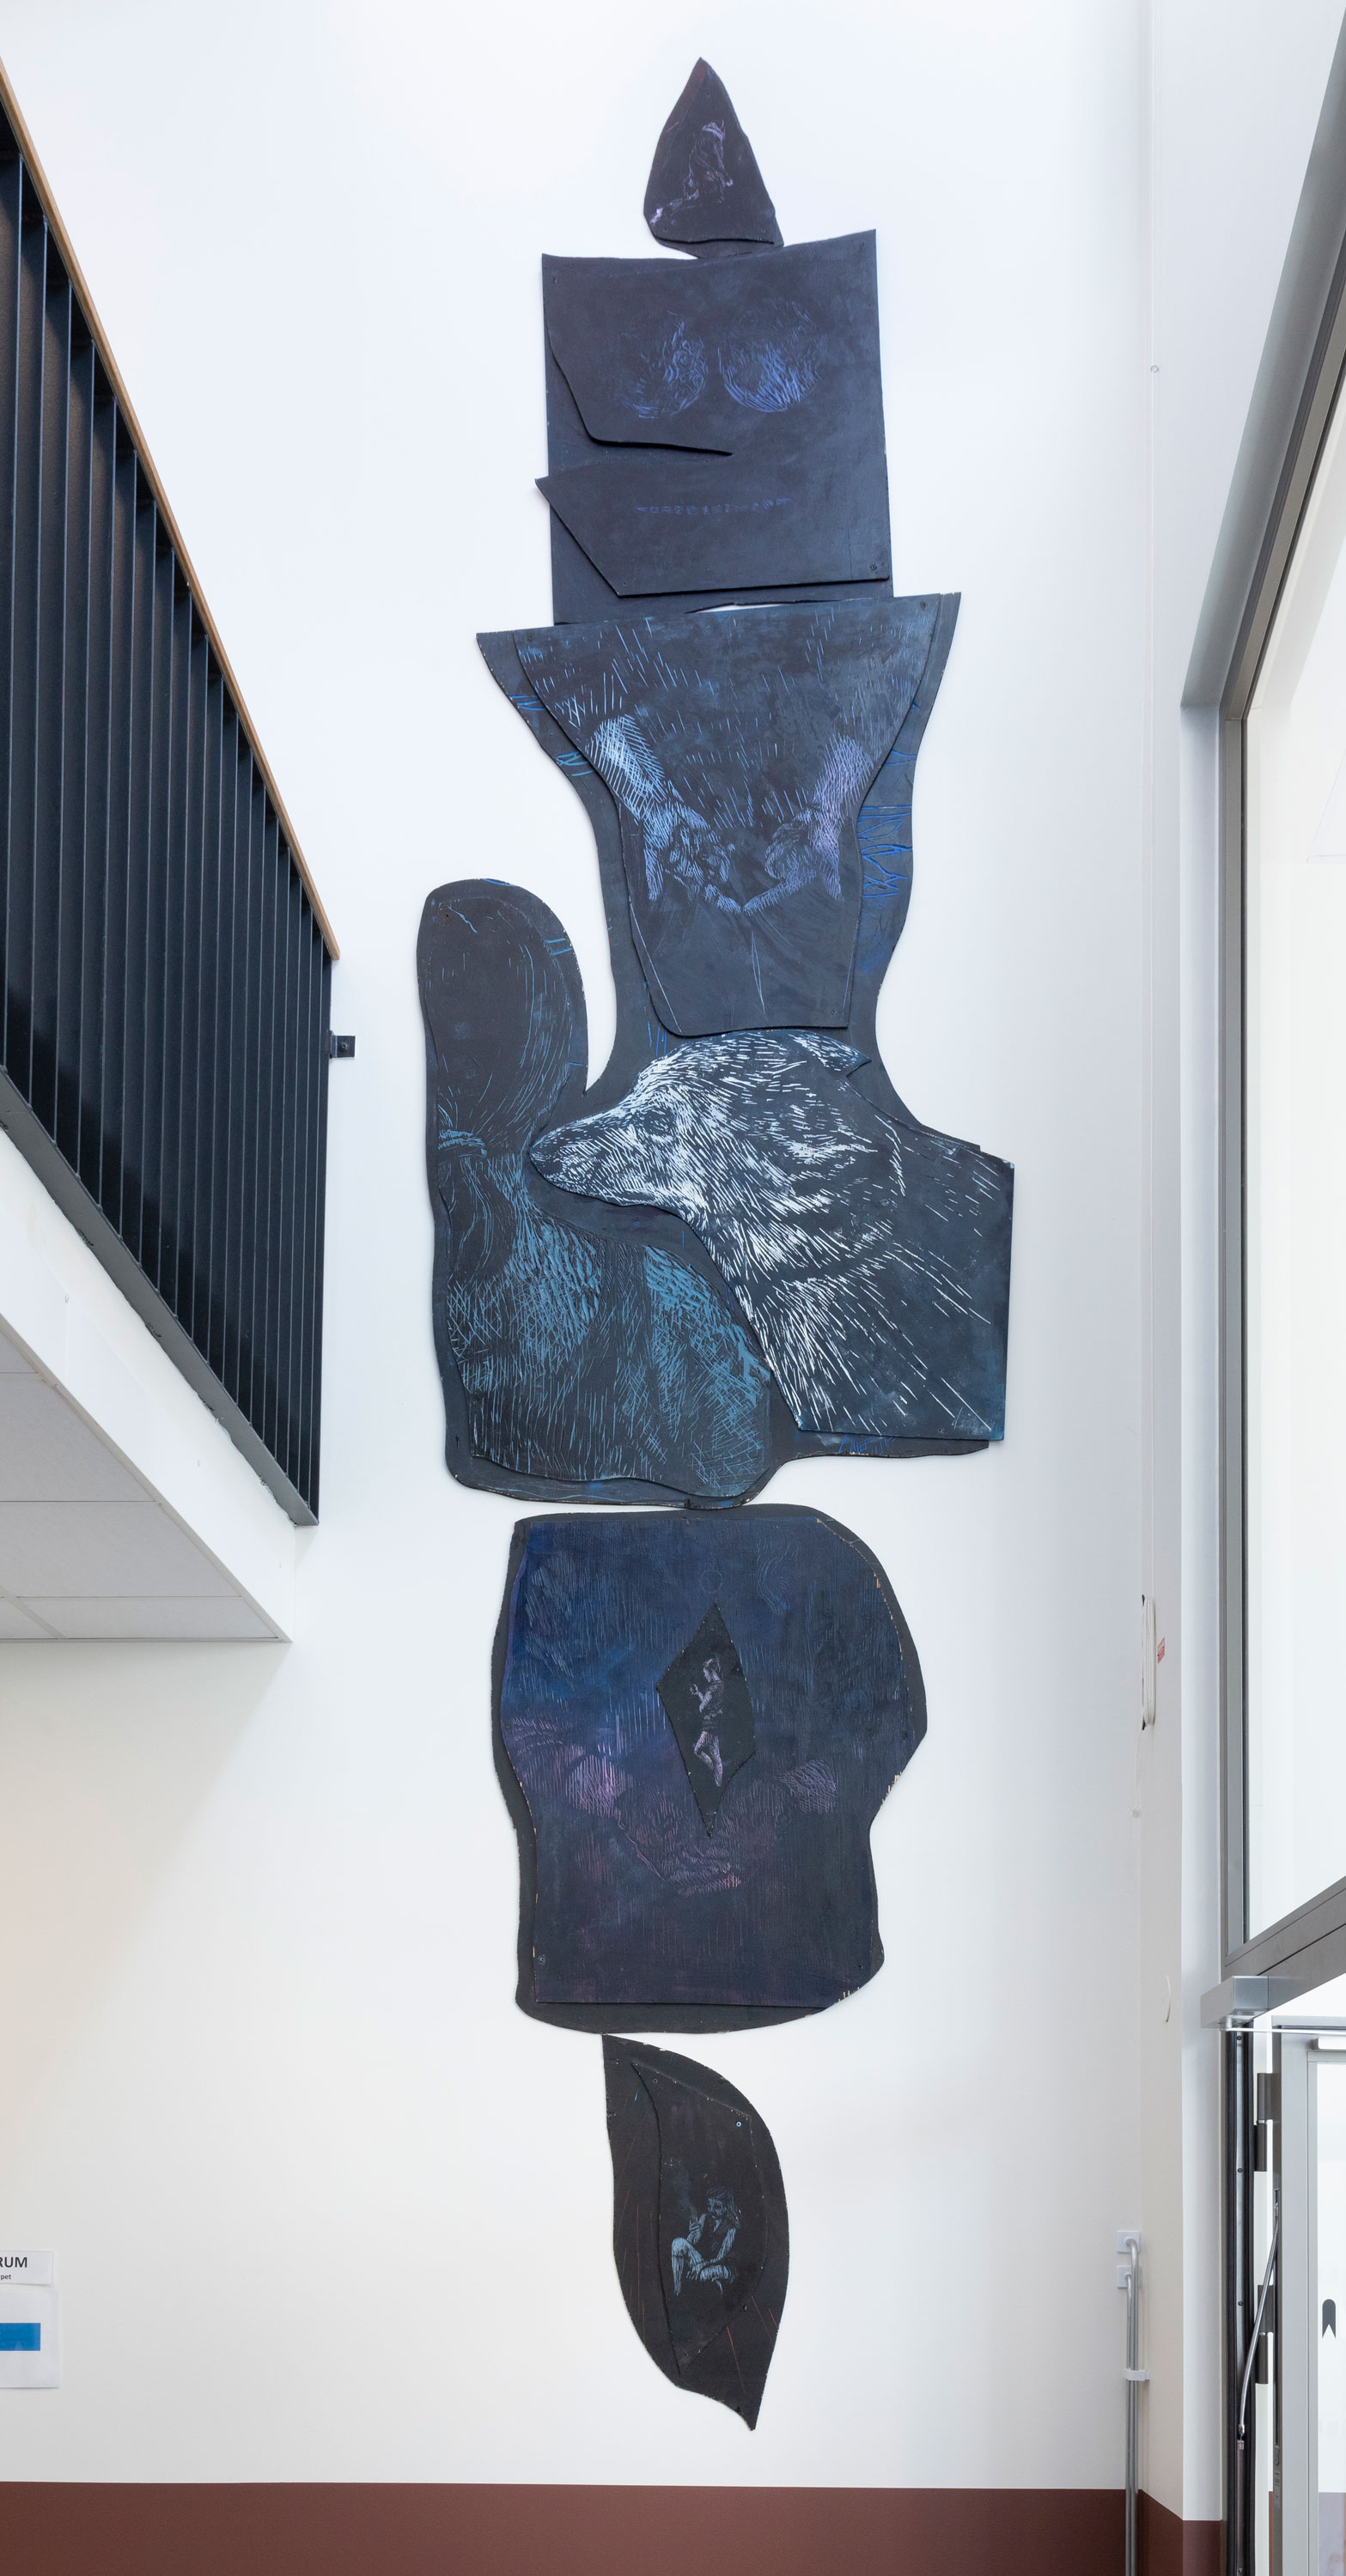 konstverk av blåmålade träskivor i avlång formation på vägg i skola